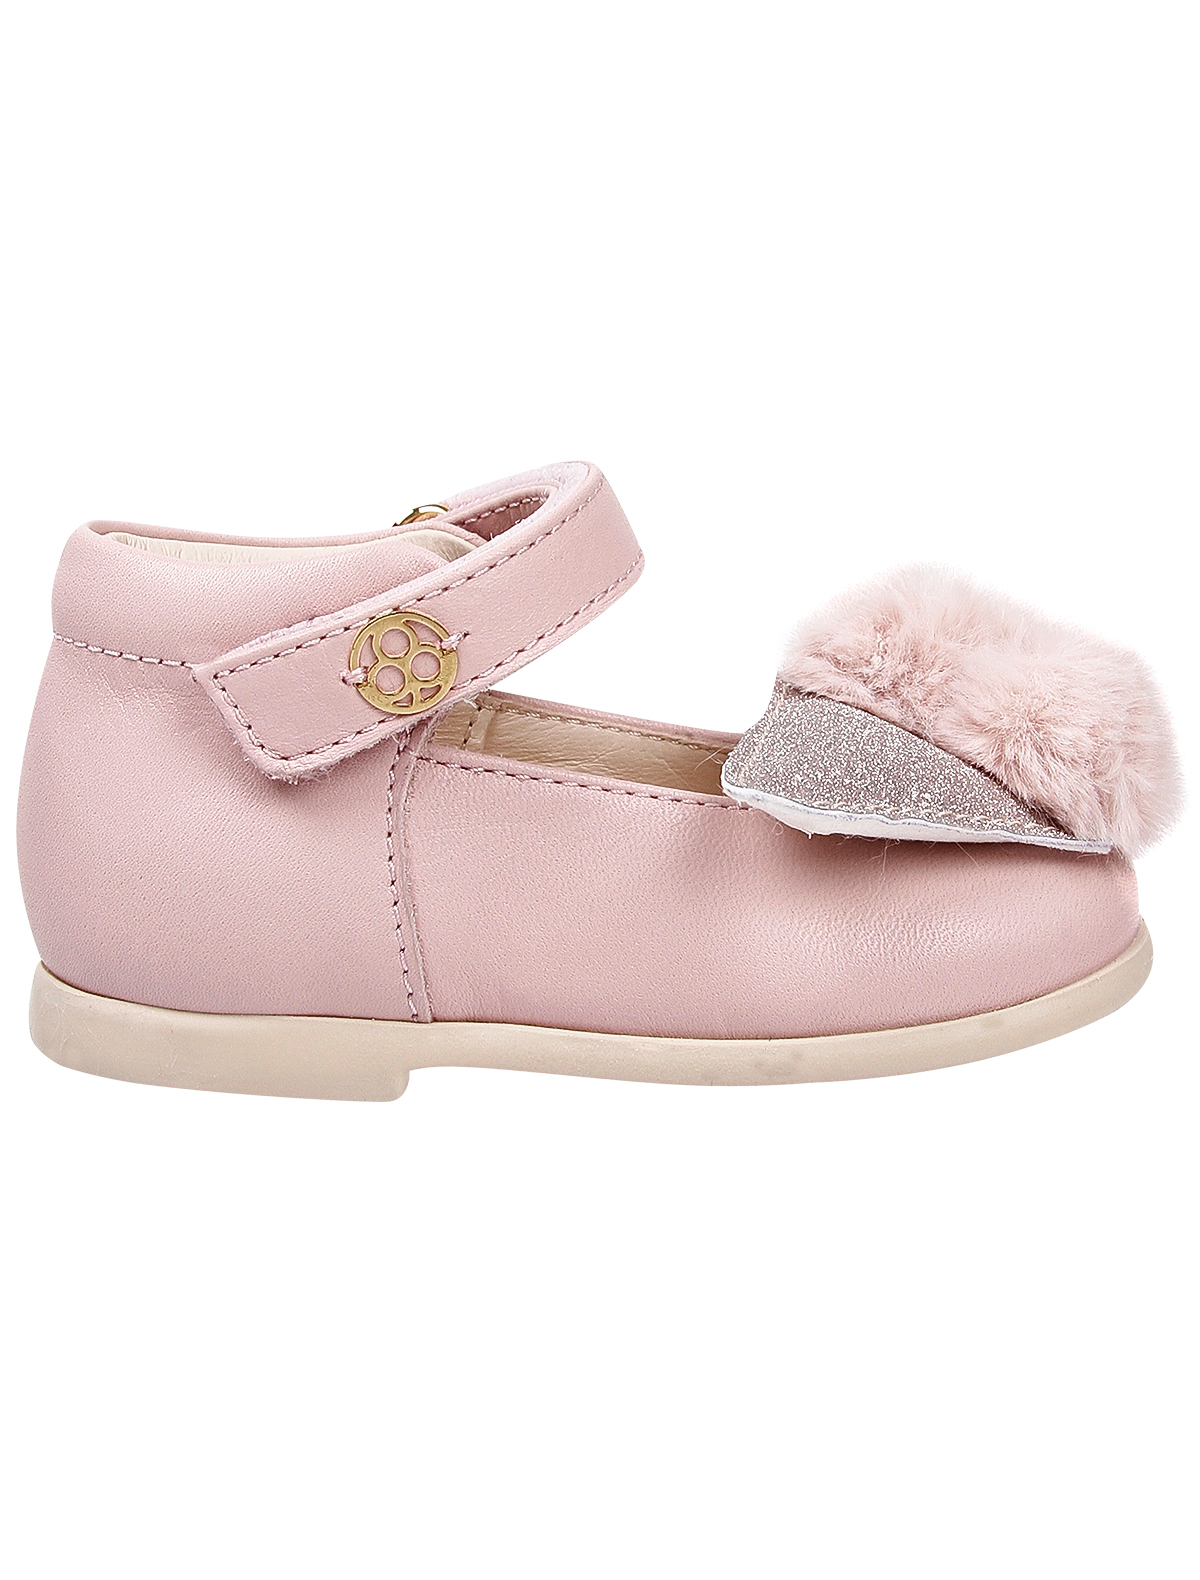 Туфли Florens 2041756, цвет розовый, размер 24 2012609980018 - фото 2